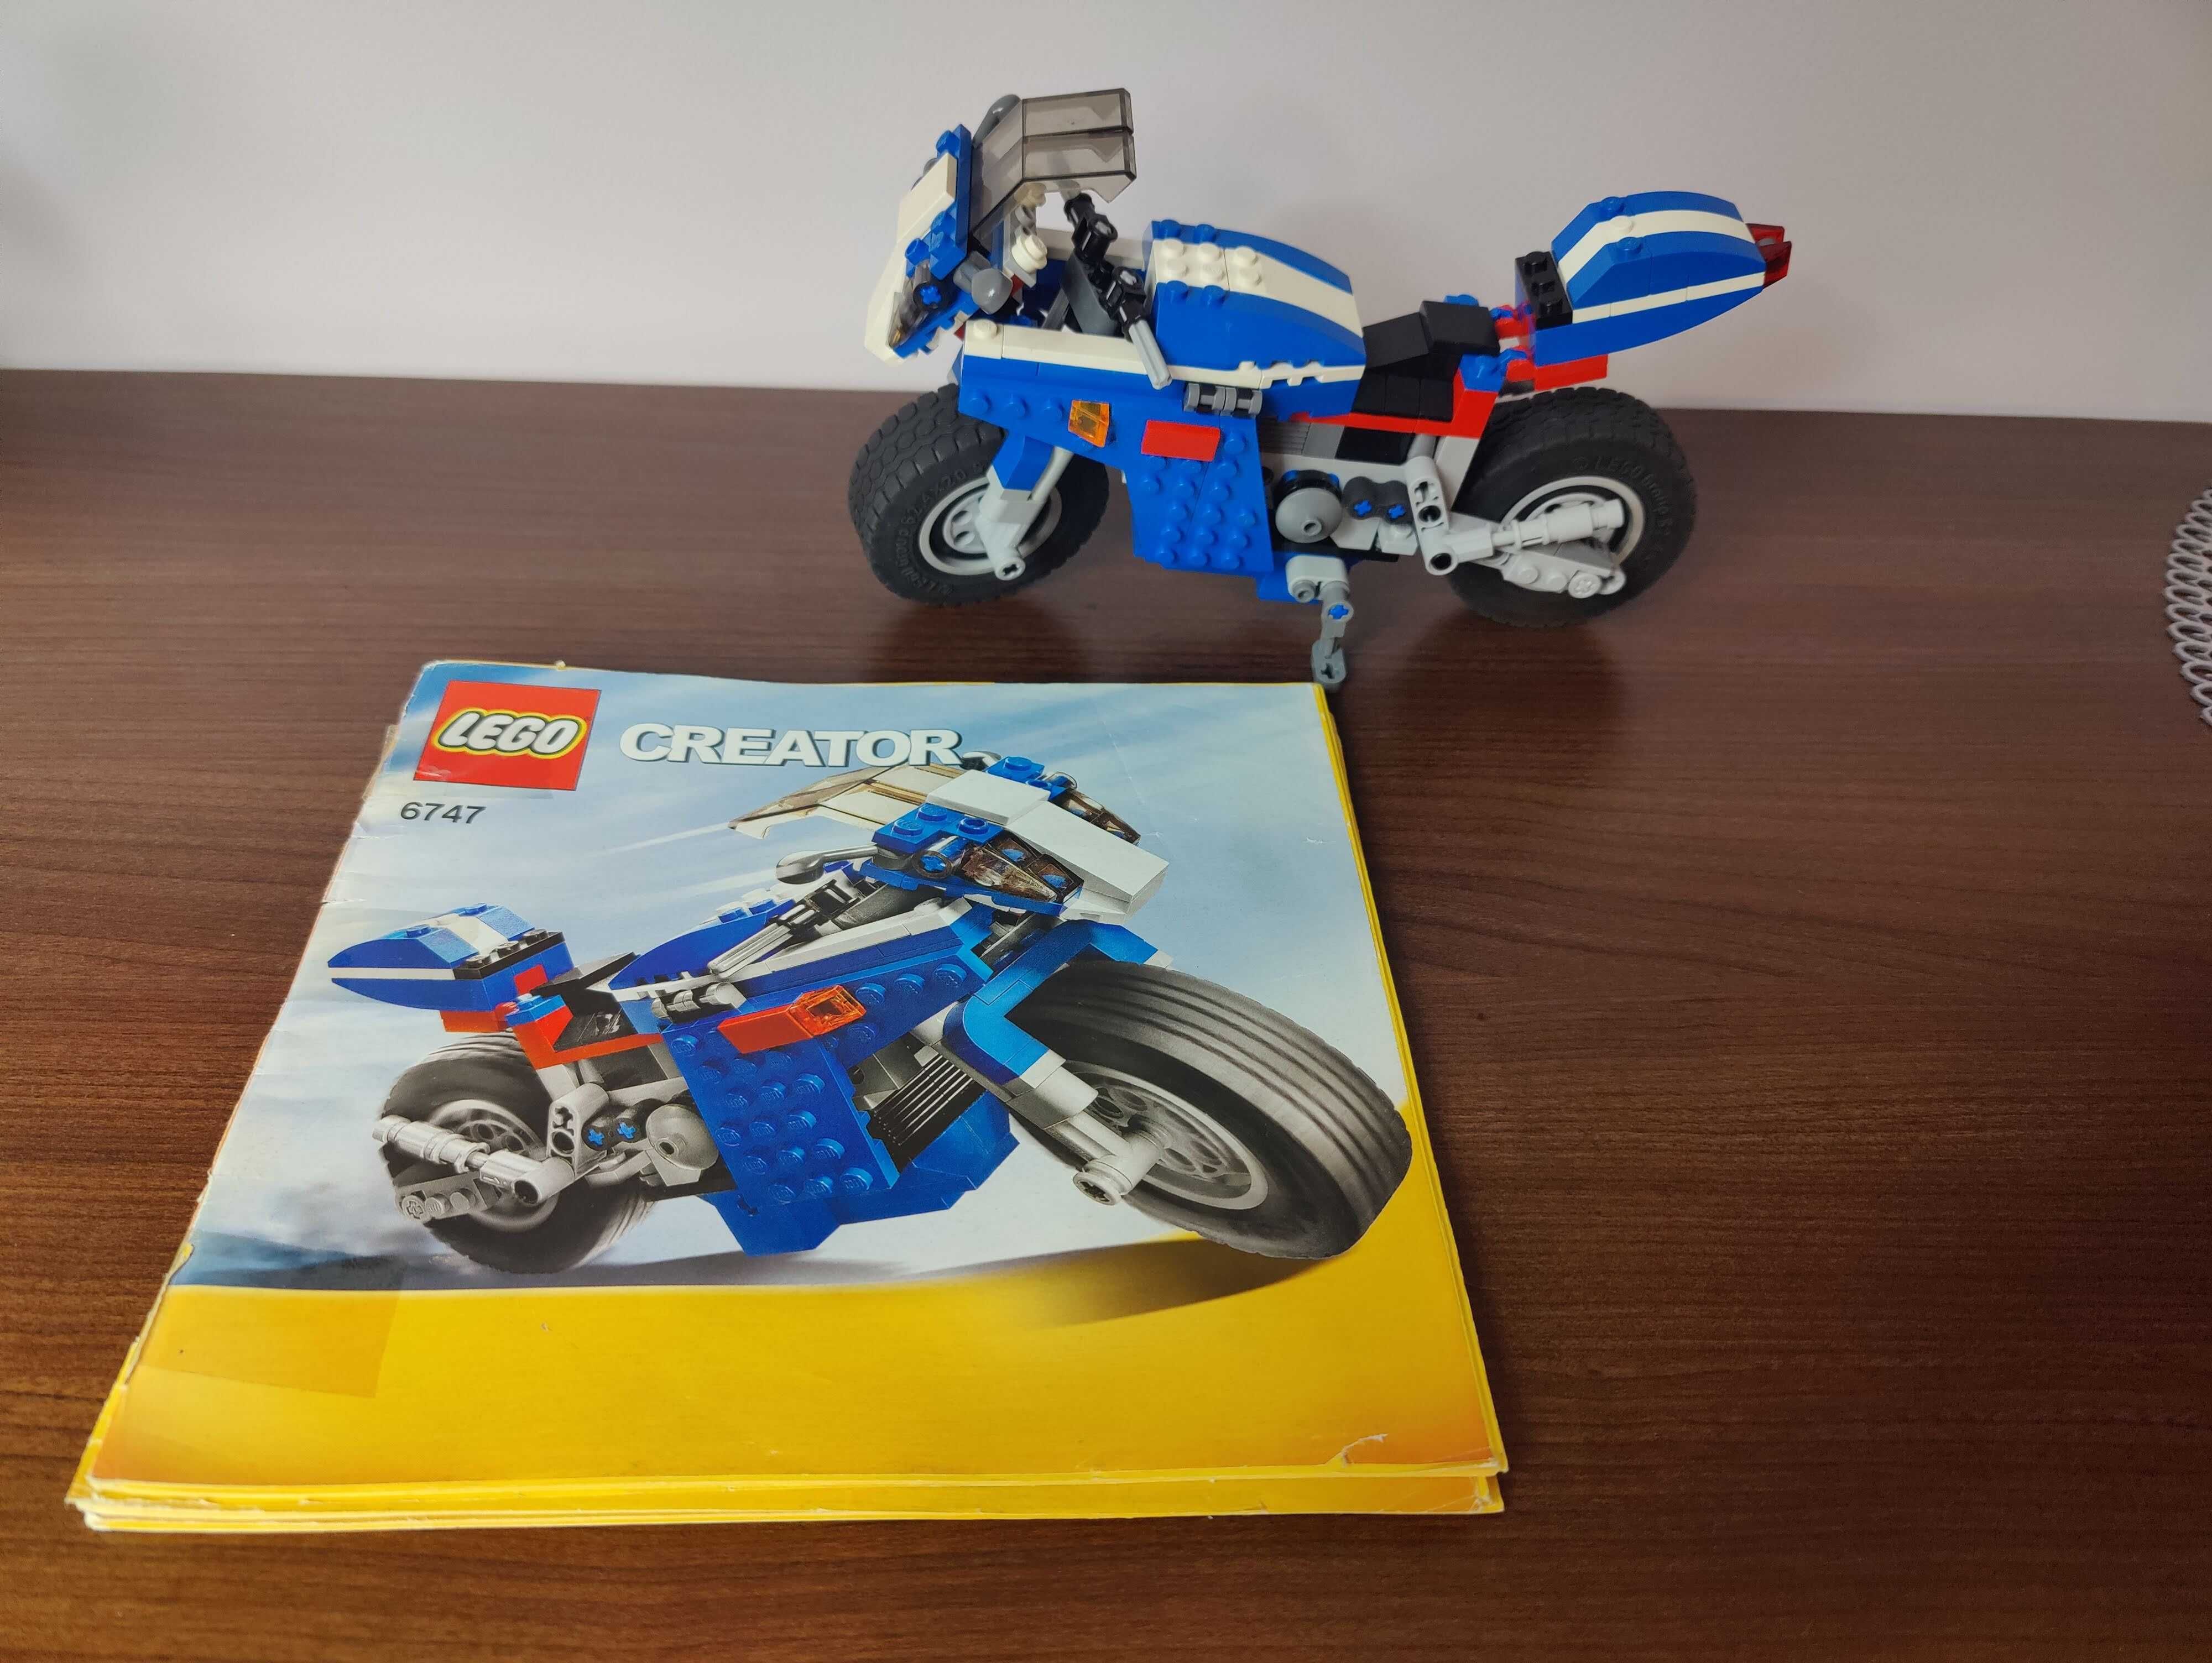 Lego Creator 3w1 Ścigacz (Race rider) 6747 kompletny